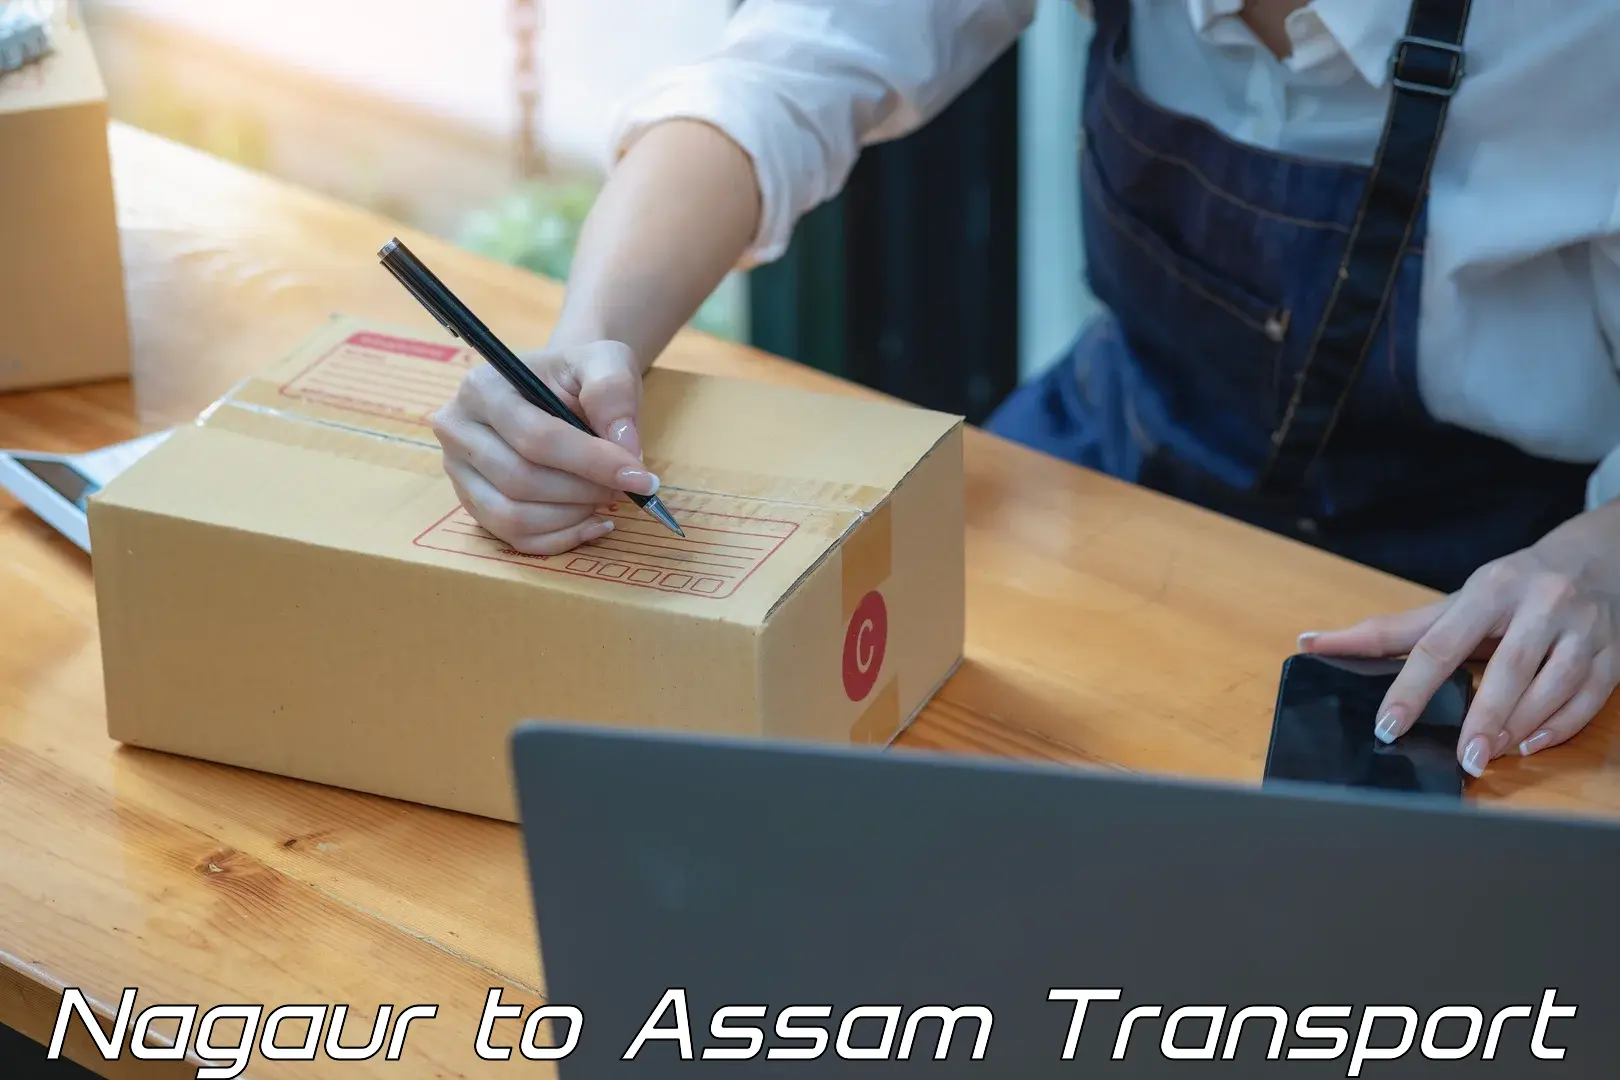 Road transport online services Nagaur to Assam